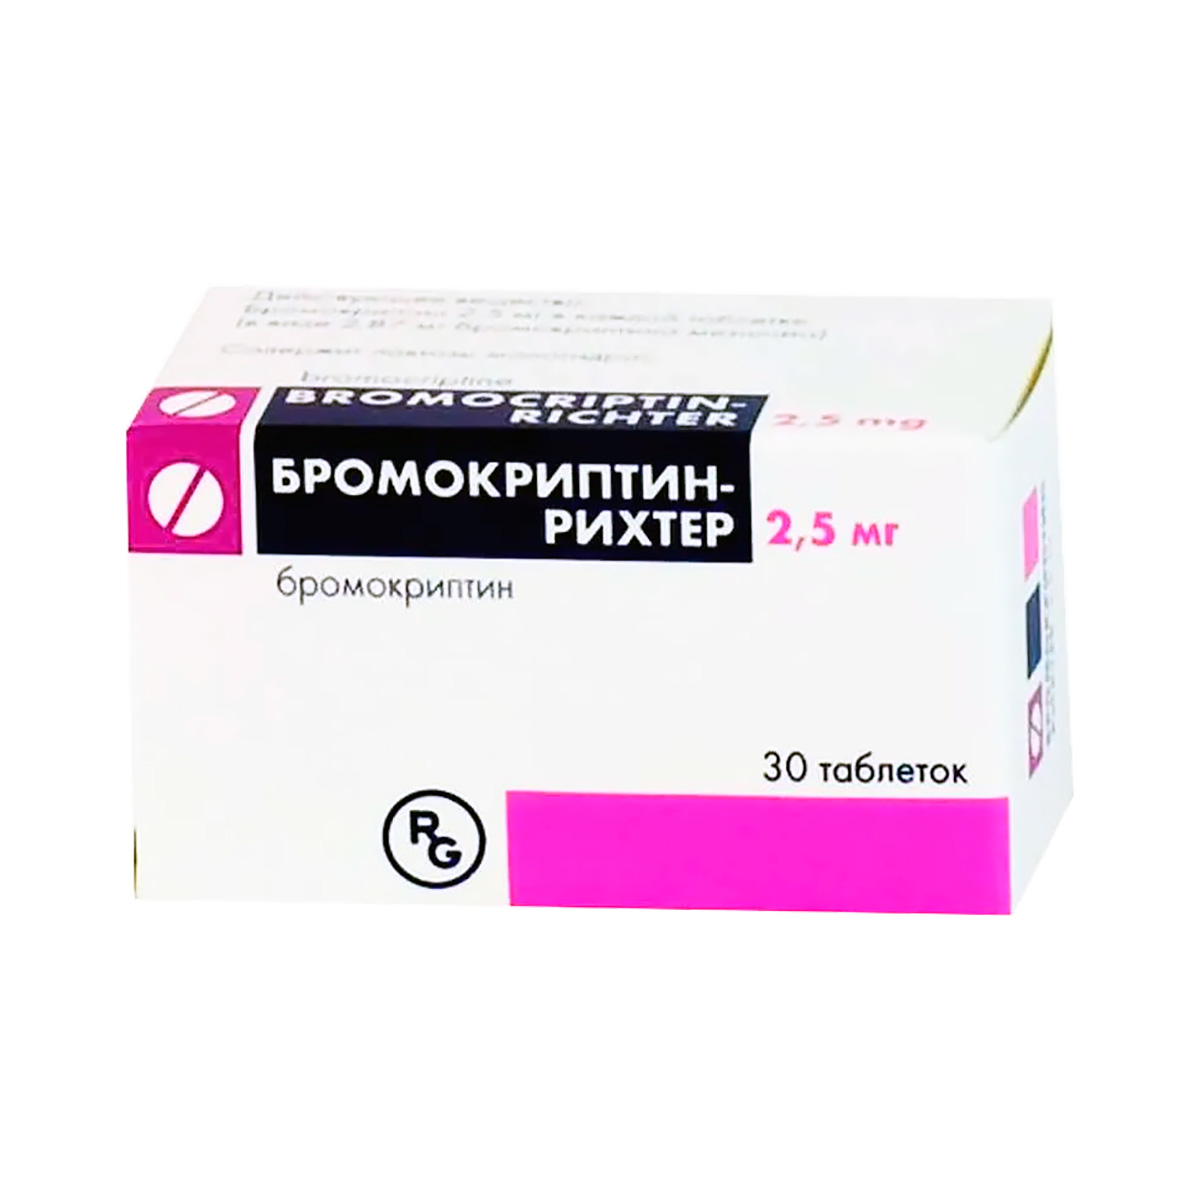 Бромокриптин-Рихтер 2,5 мг таблетки 30 шт